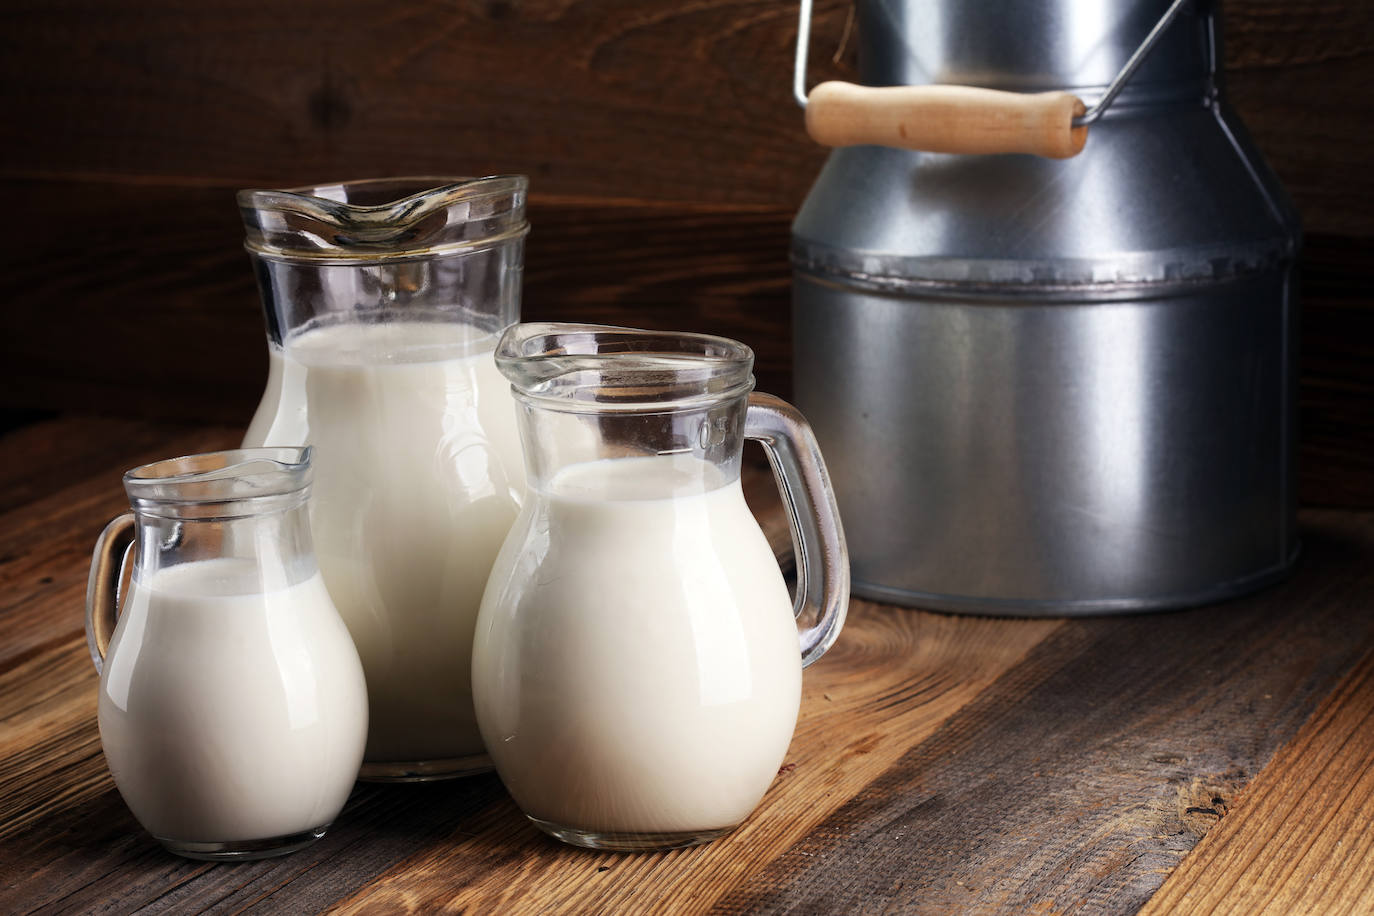 La leche, entera incluso a dieta | Hoy